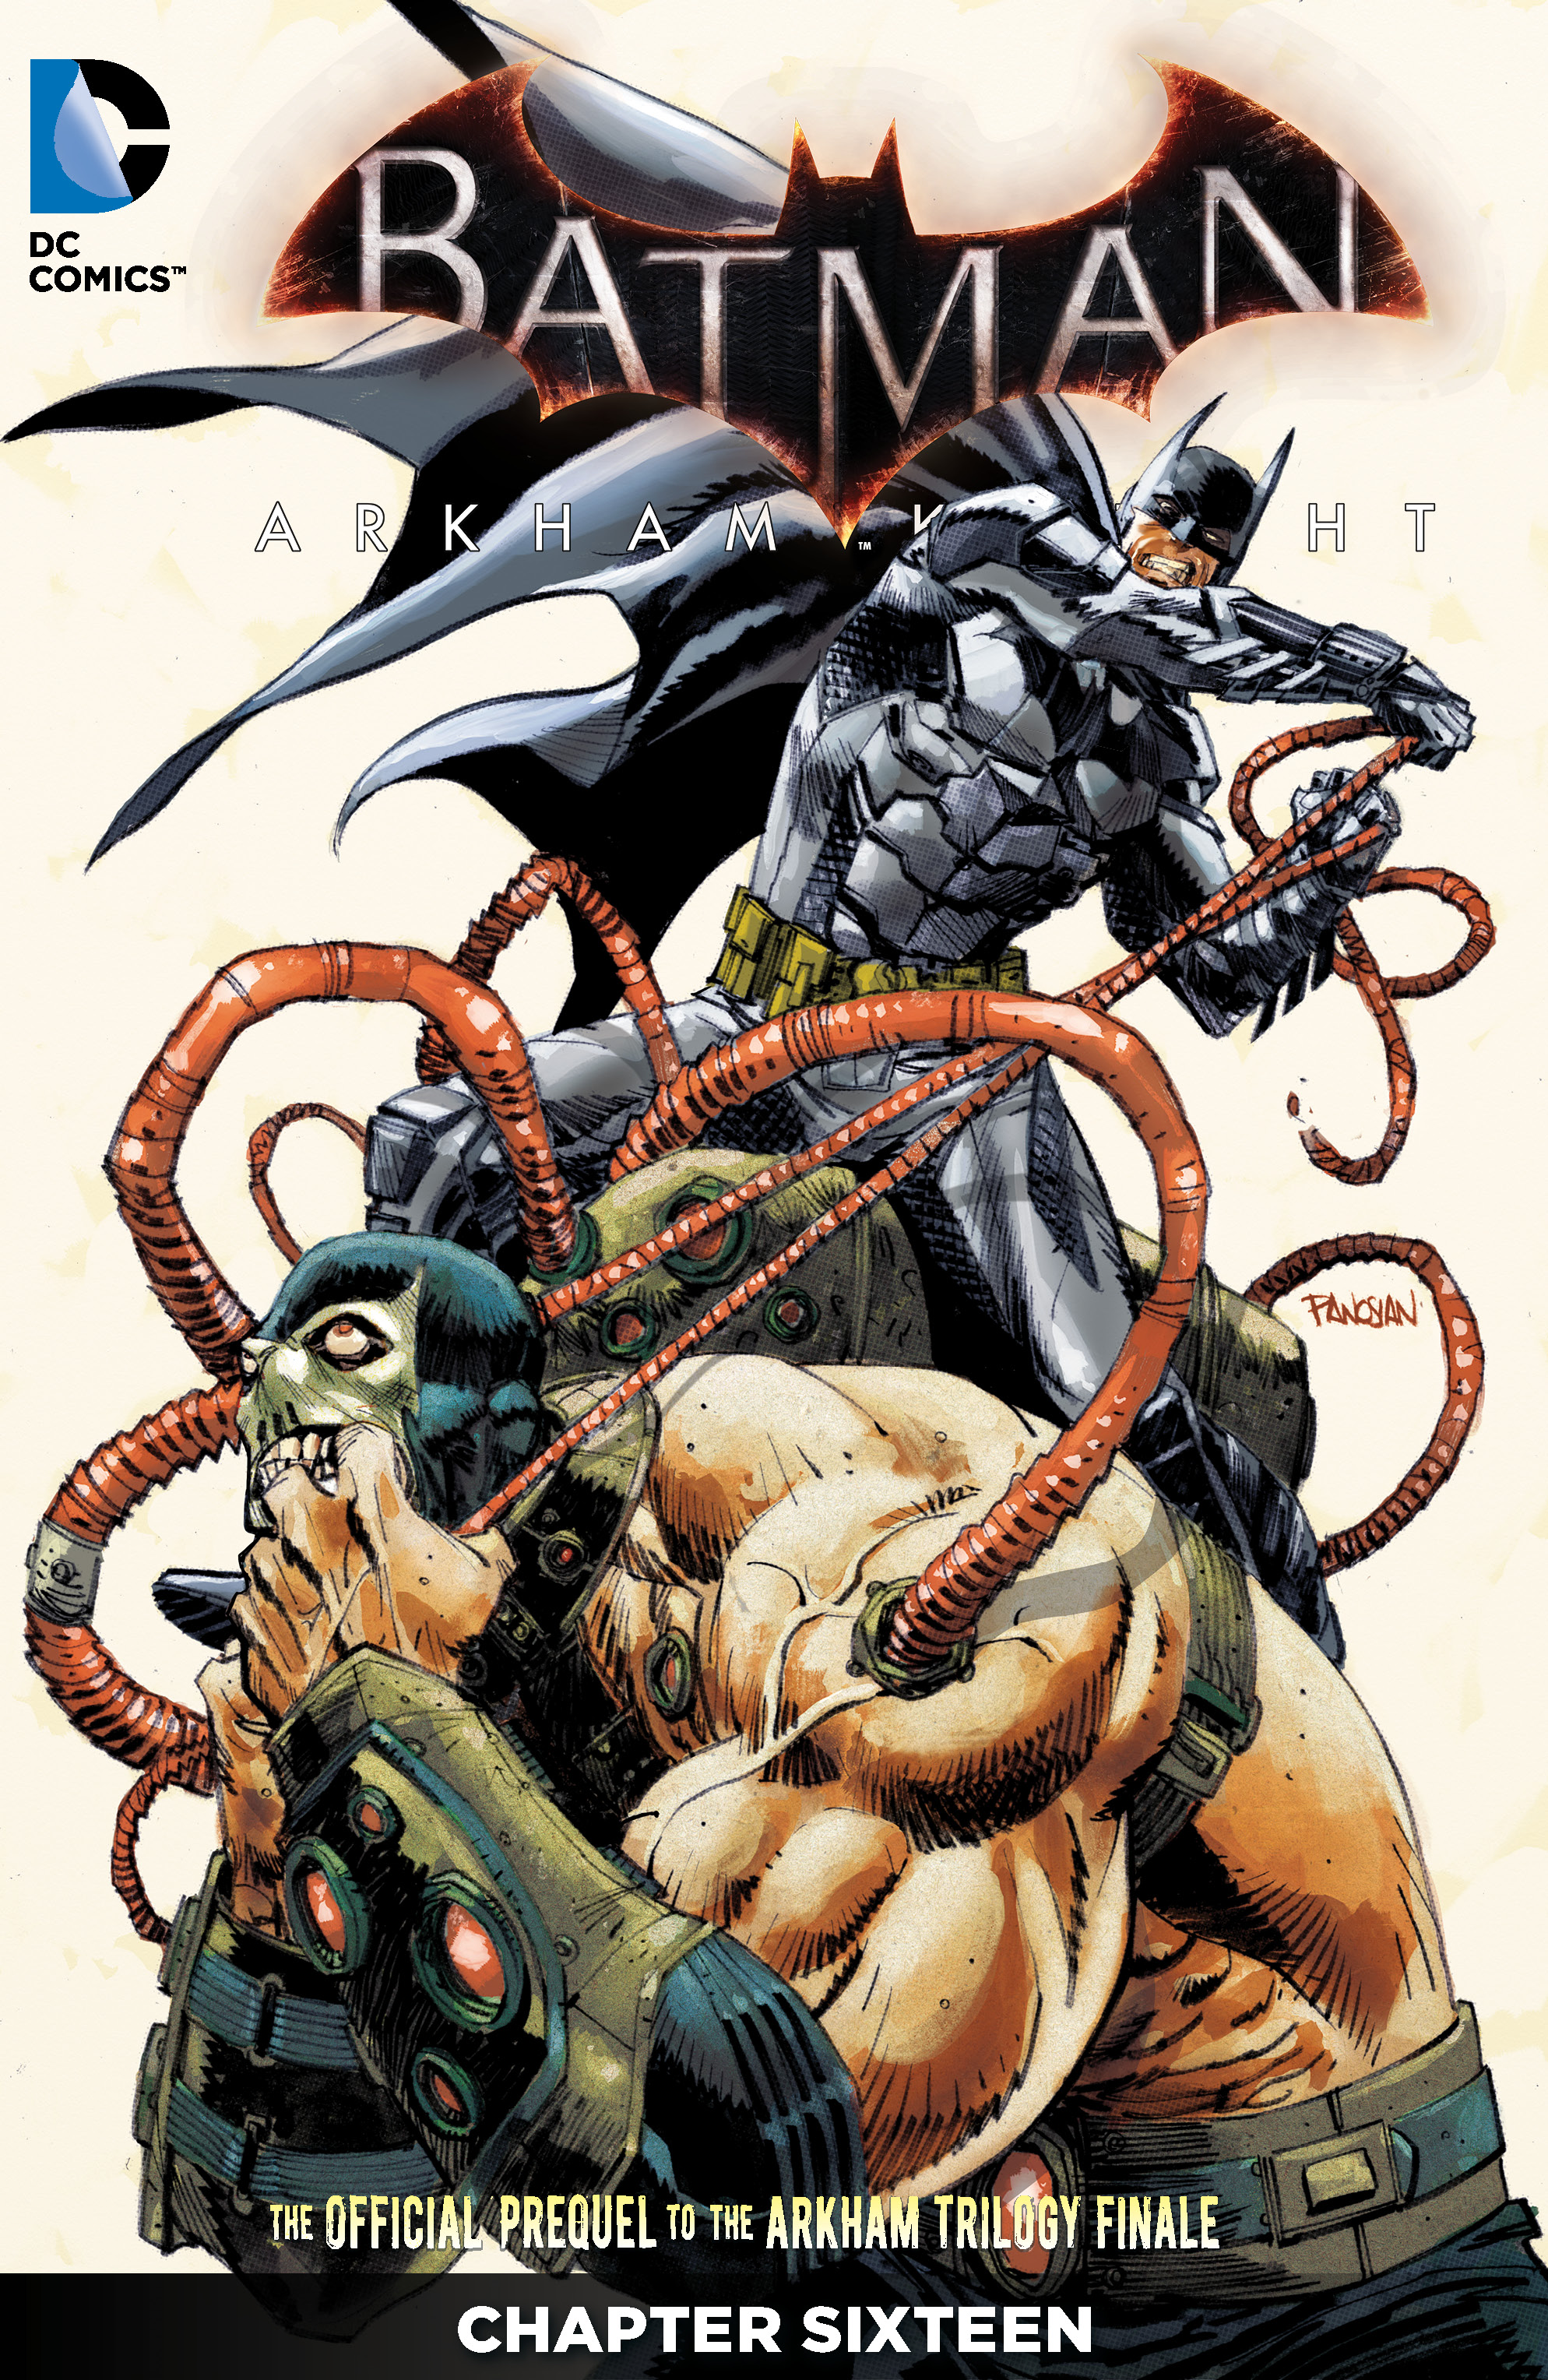 Batman: Arkham Knight #16 preview images